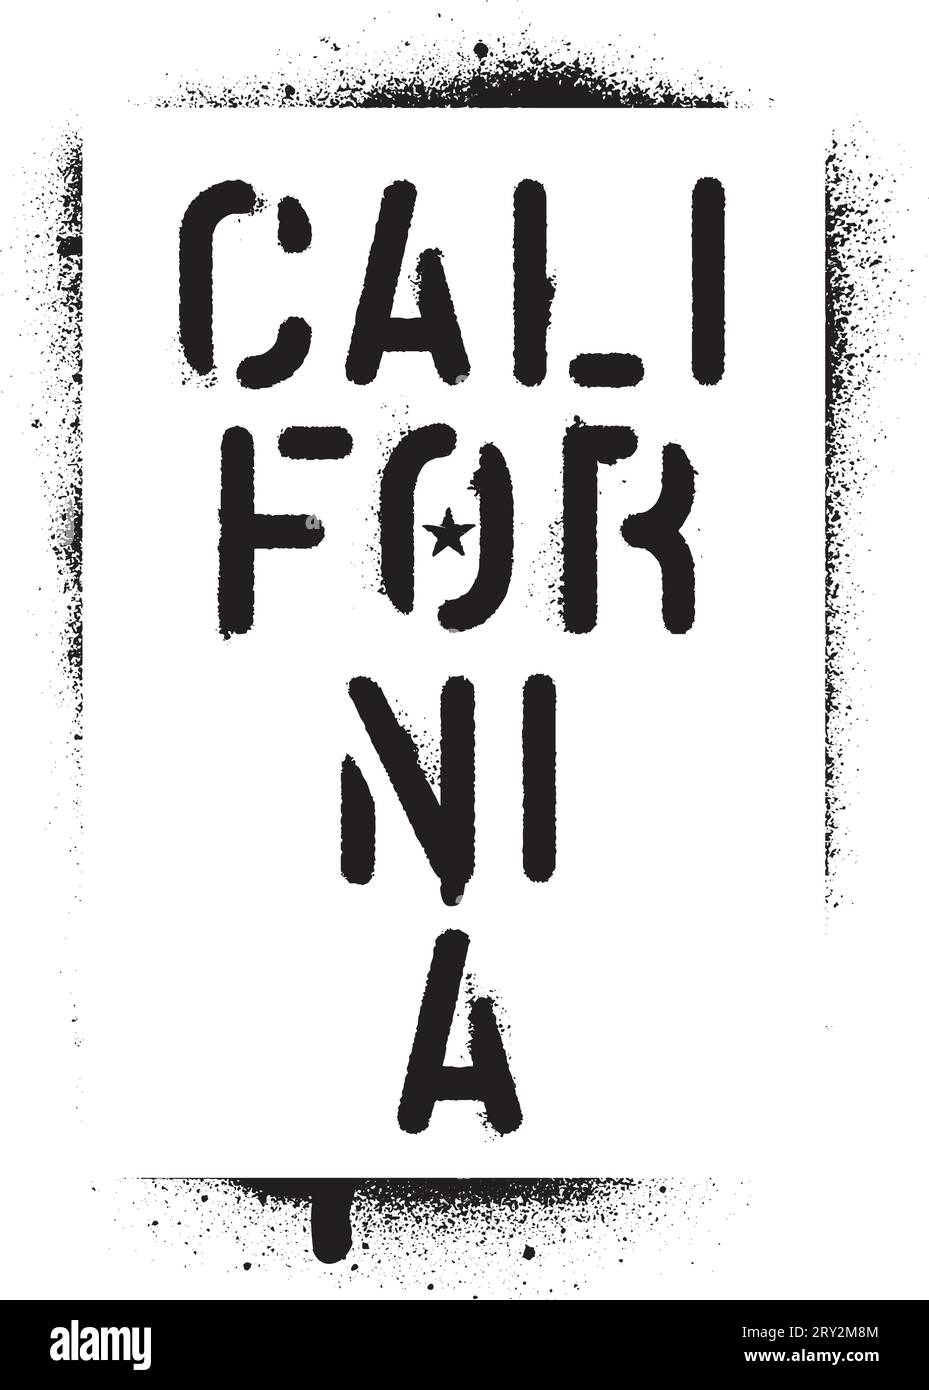 Sprühfarbe Graffiti Schablone ''California''' Stock Vektor